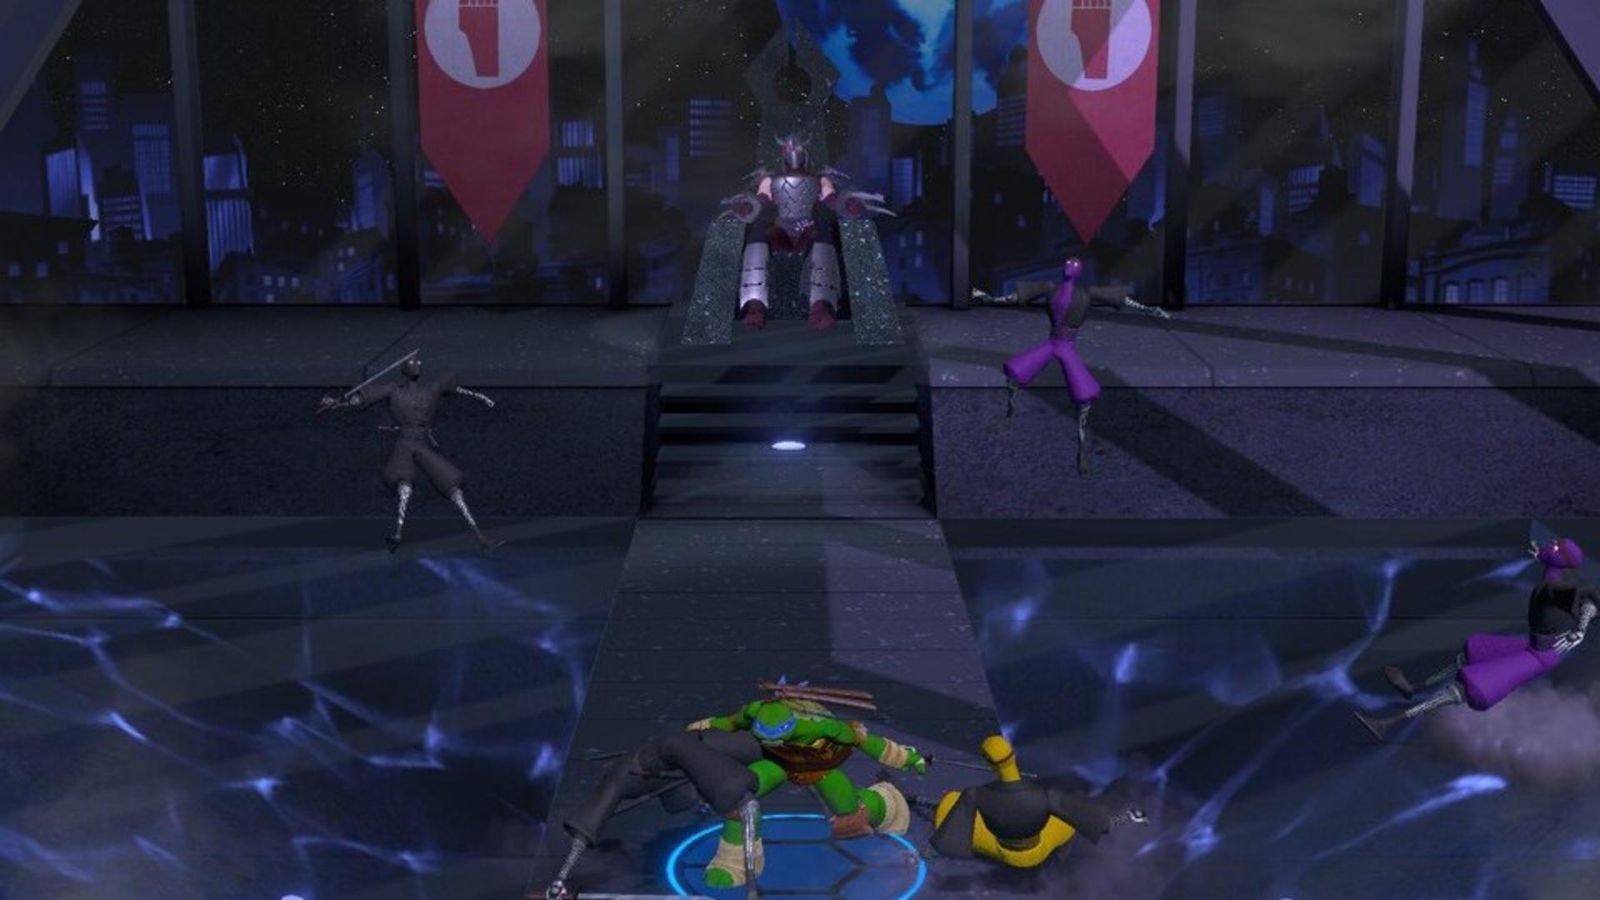 Leonardo takes down Foot Clan members in TMNT Arcade: Wrath of the Mutants